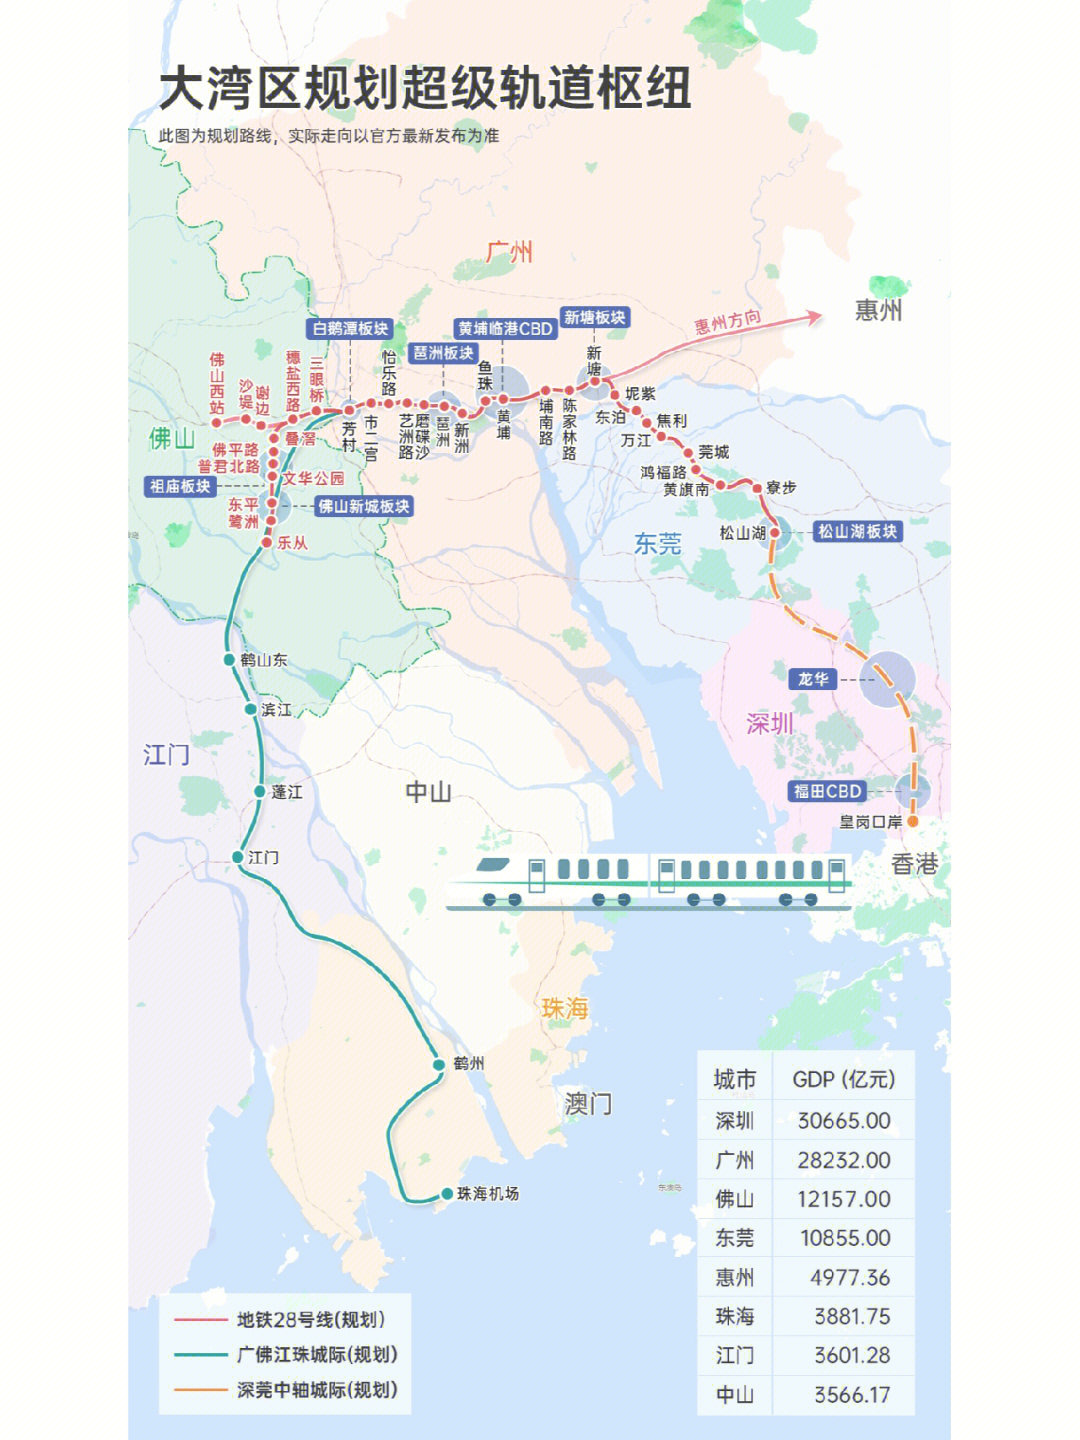 佛莞惠城轨线路图图片